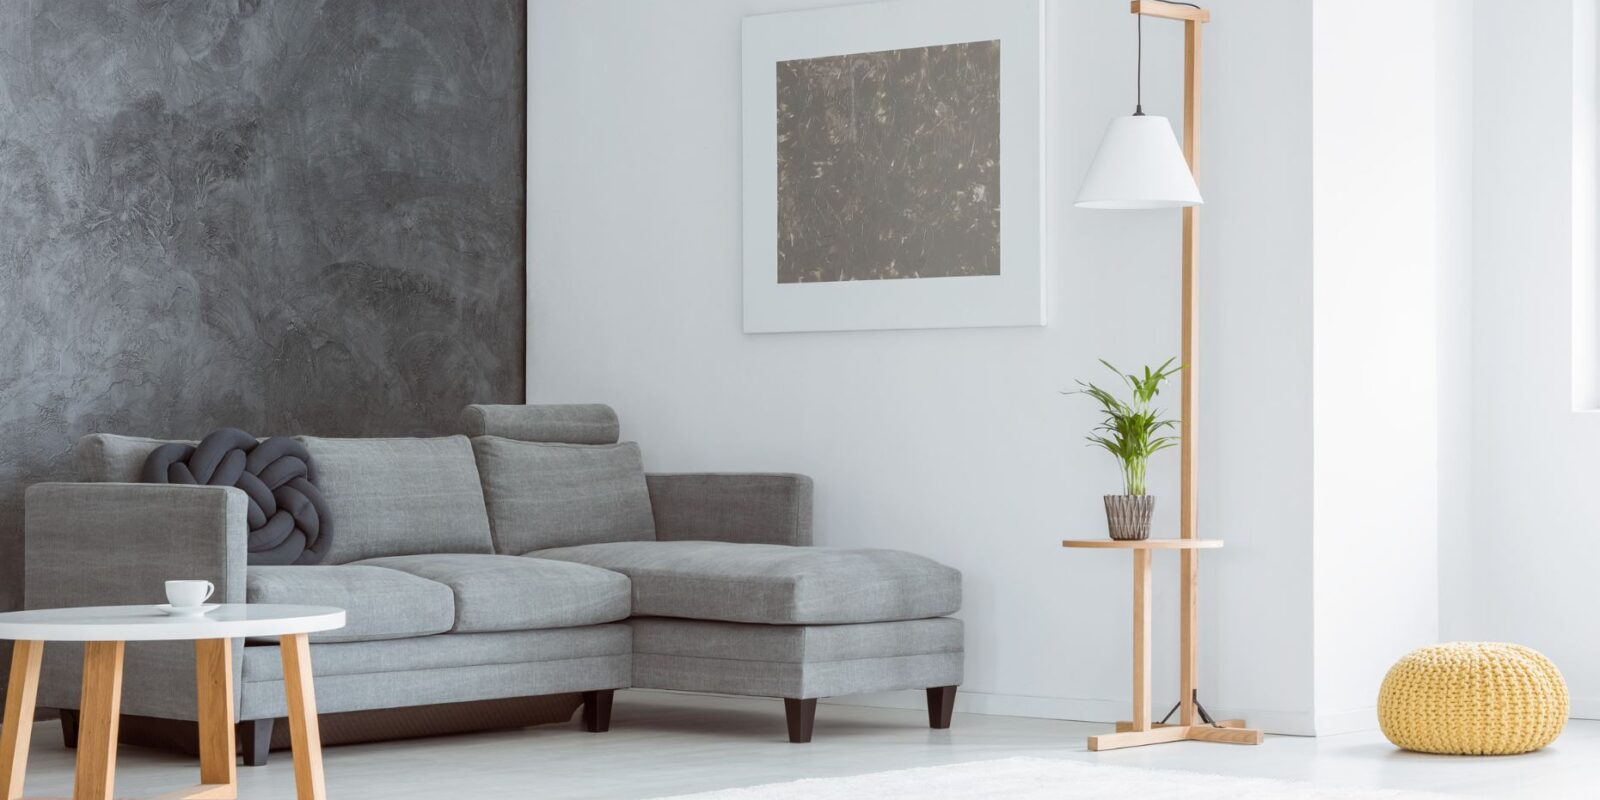 Graues Farbkonzept für das Wohnzimmer Kombinieren von Grautönen für stilvolle Eleganz